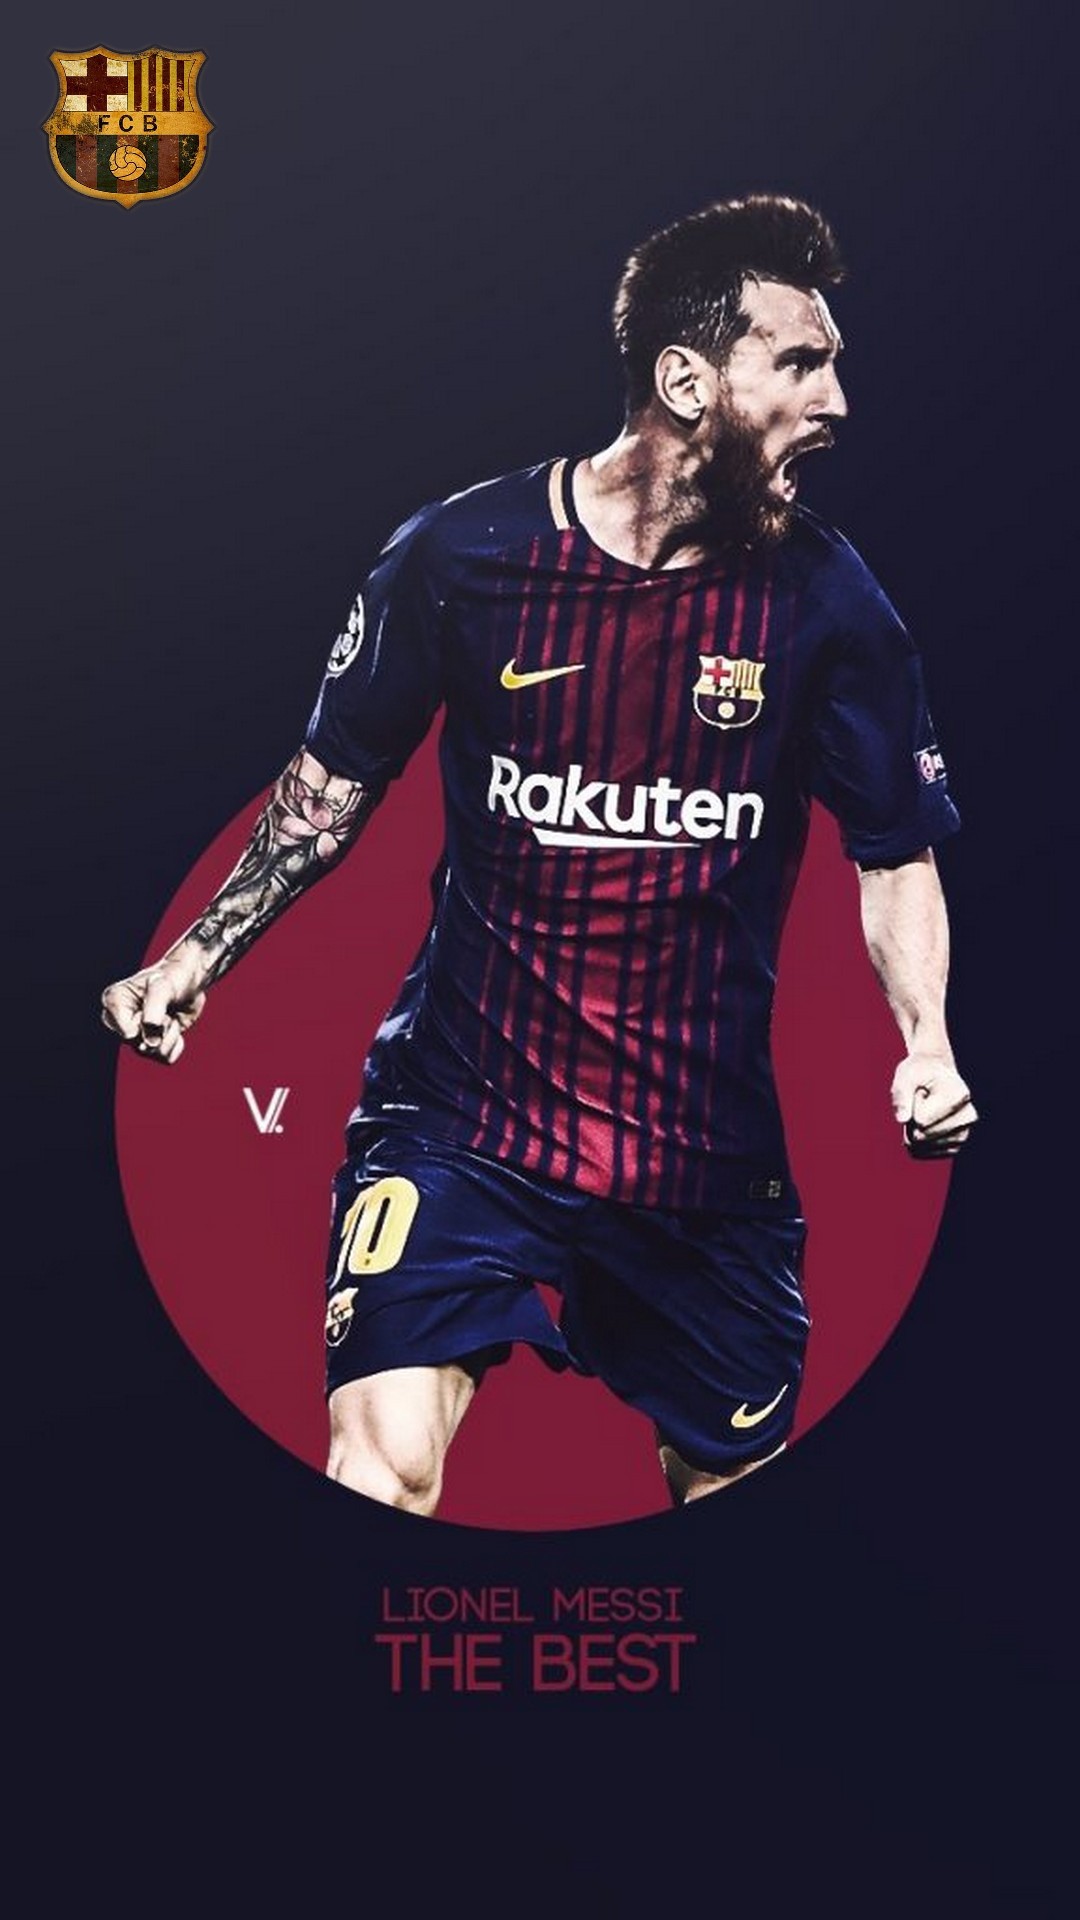 Bạn là fan của Lionel Messi và câu lạc bộ Barcelona? Hãy thưởng thức bức hình nền cho iPhone với hình ảnh Messi tại đội bóng Barcelona để tạo nên một không gian điện thoại thật cá tính và đầy đủ tinh thần yêu mến đội bóng và cầu thủ của mình.